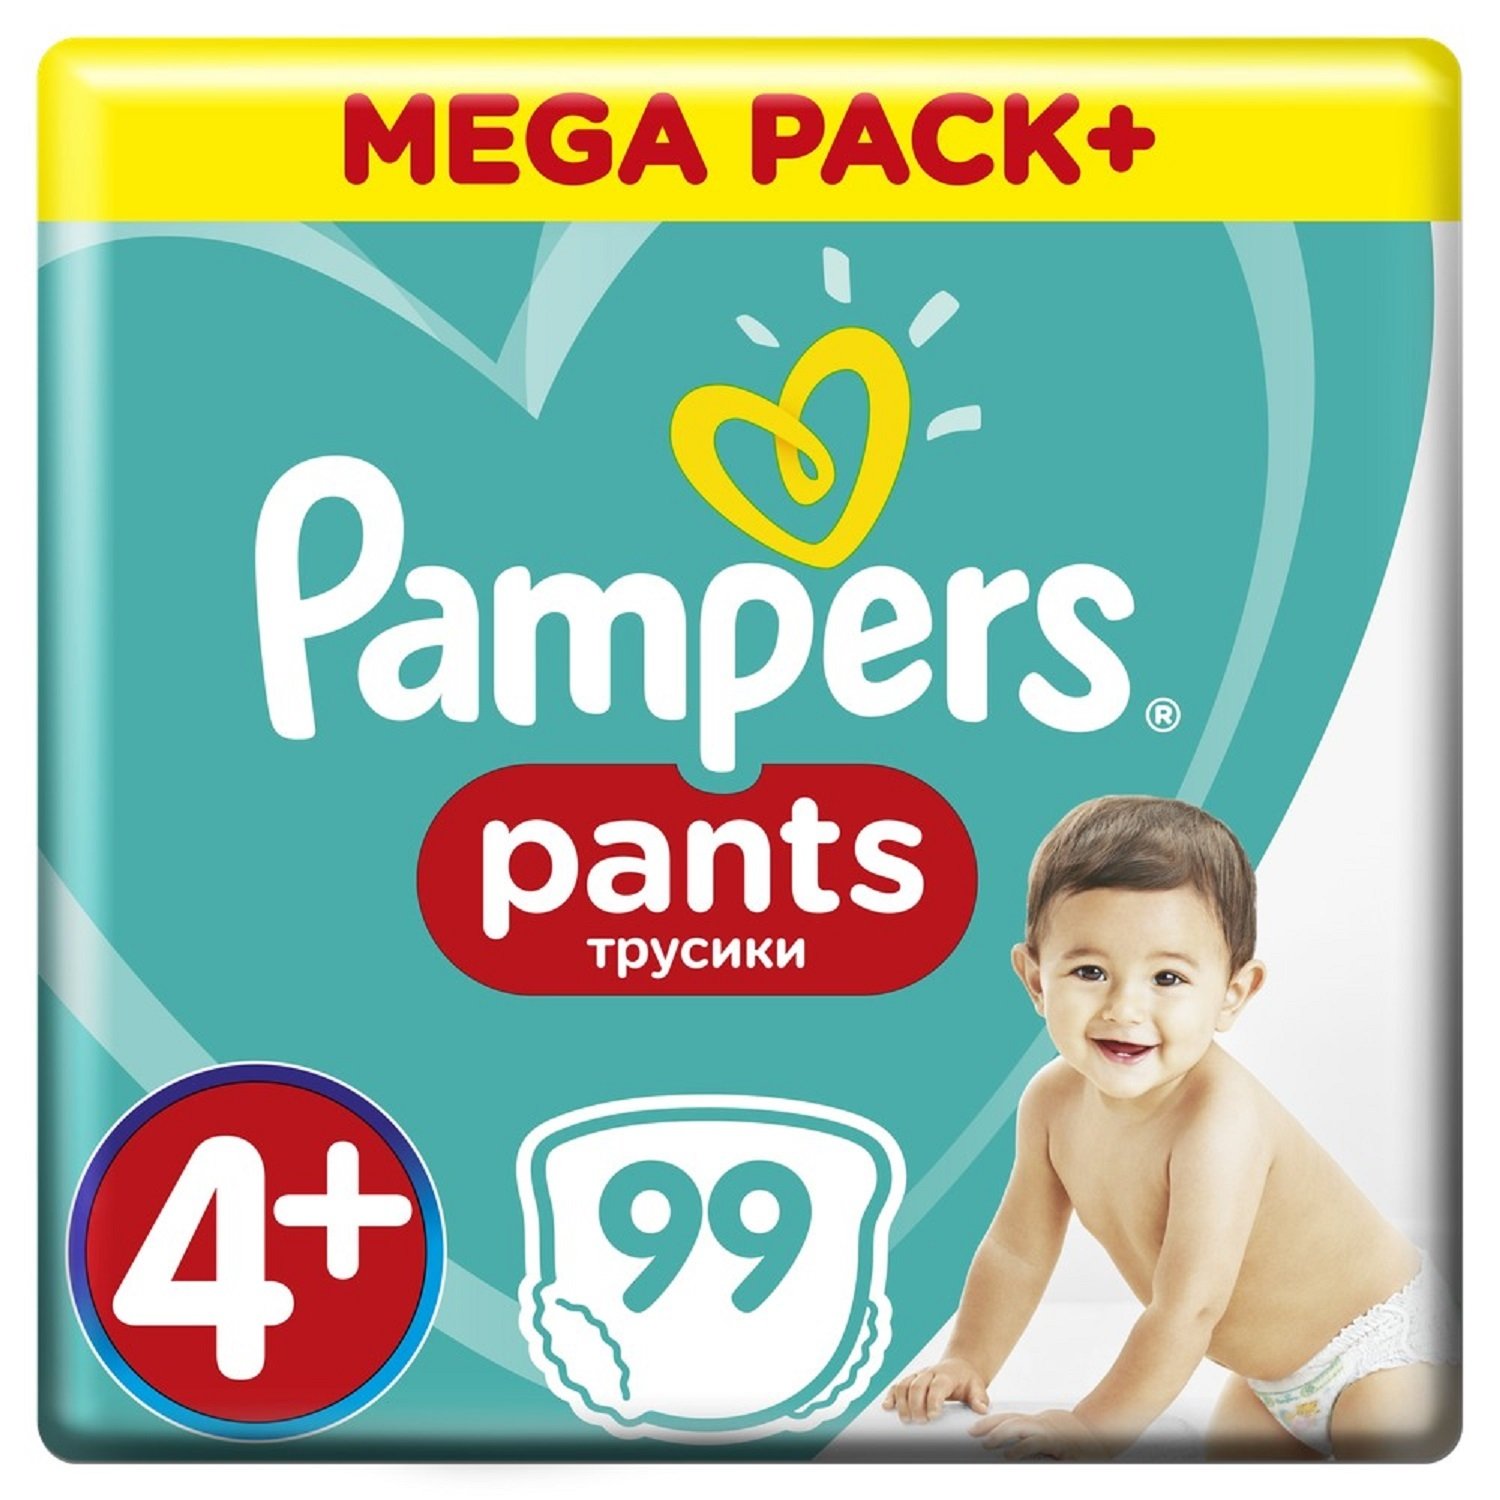 Трусики Pampers Pants 4+ (9-15 кг) - 99 шт